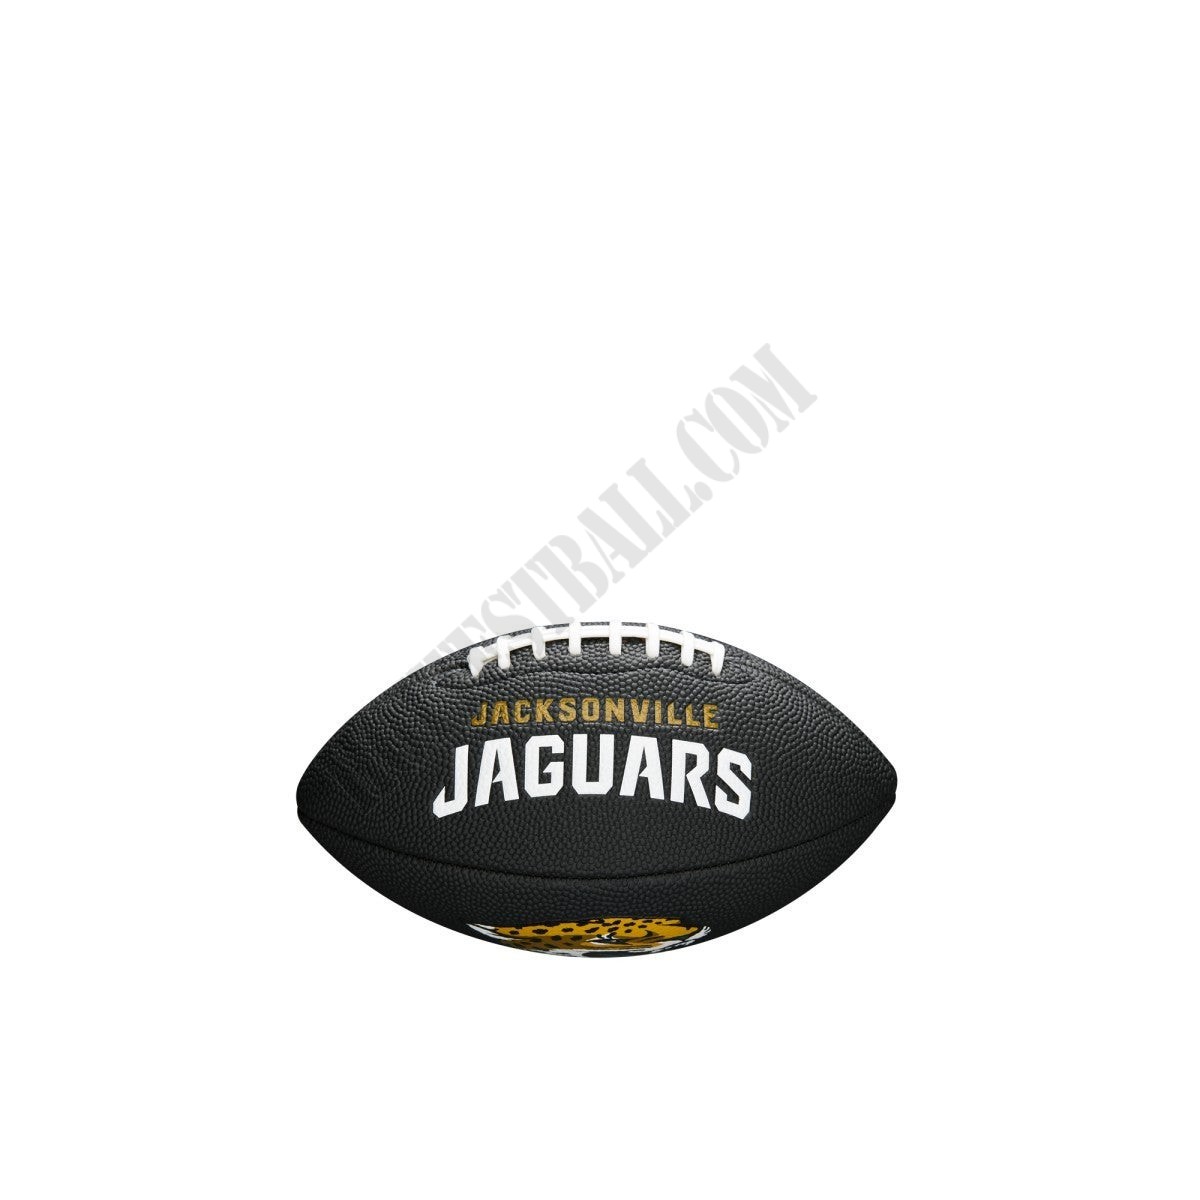 NFL Team Logo Mini Football - Jacksonville Jaguars ● Wilson Promotions - NFL Team Logo Mini Football - Jacksonville Jaguars ● Wilson Promotions